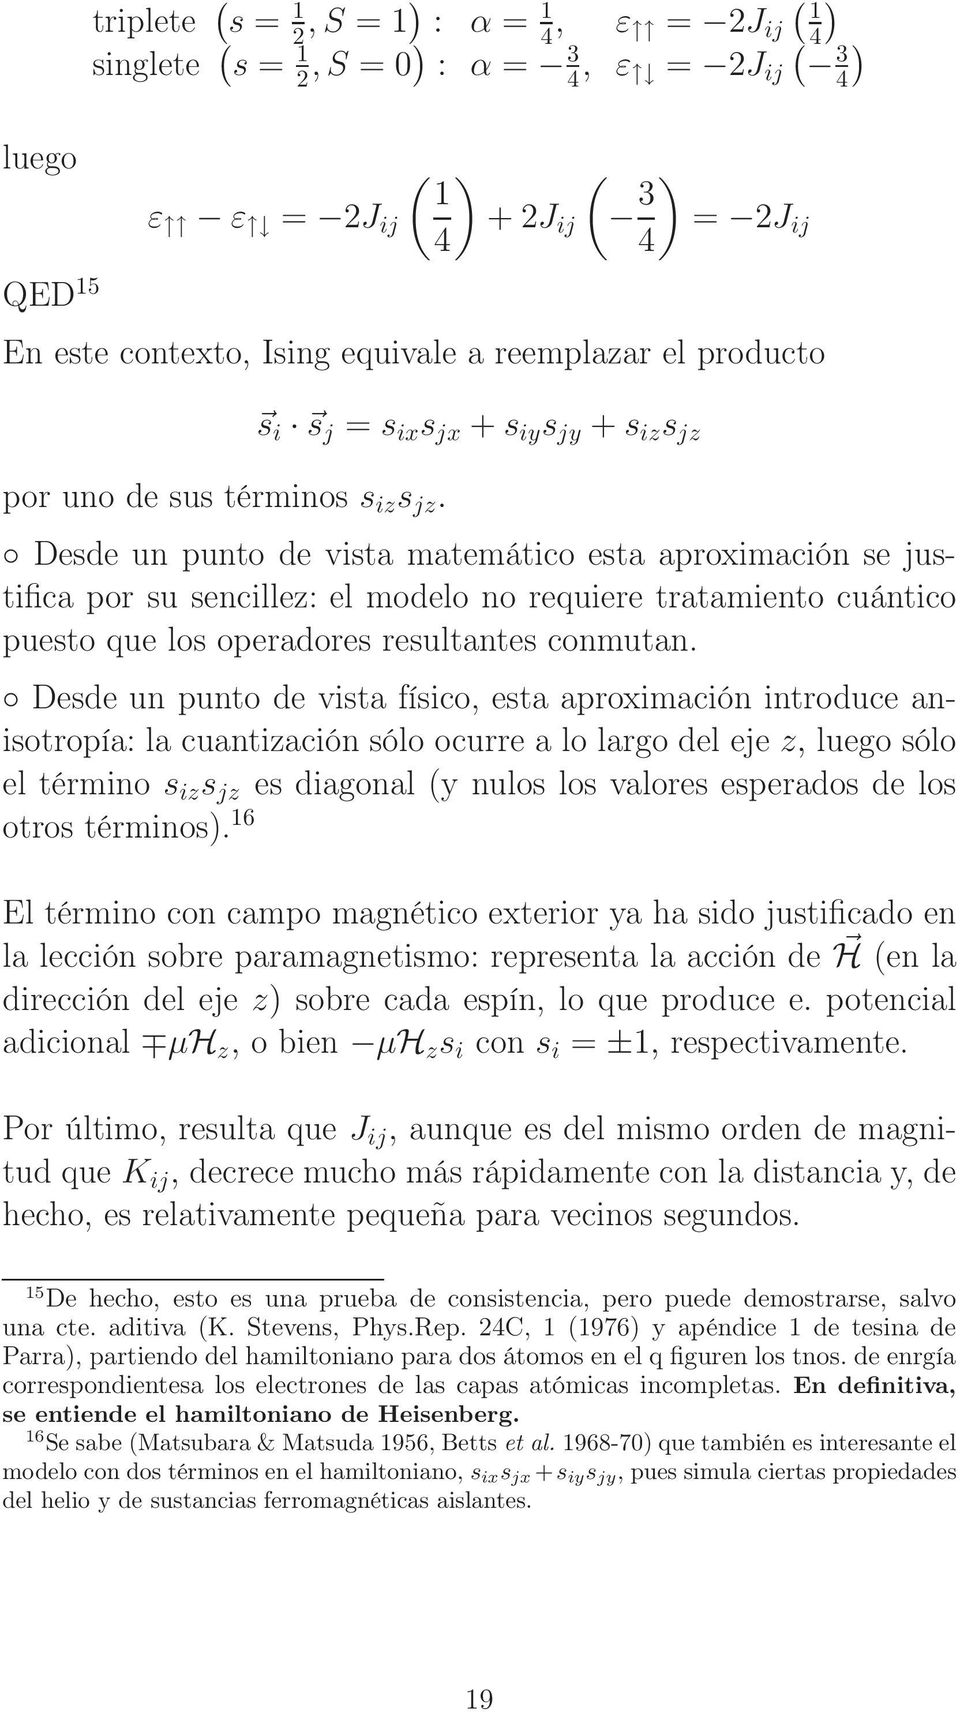 s i s j = s ix s jx + s iy s jy + s iz s jz Desde un punto de vista matemático esta aproximación se justifica por su sencillez: el modelo no requiere tratamiento cuántico puesto que los operadores